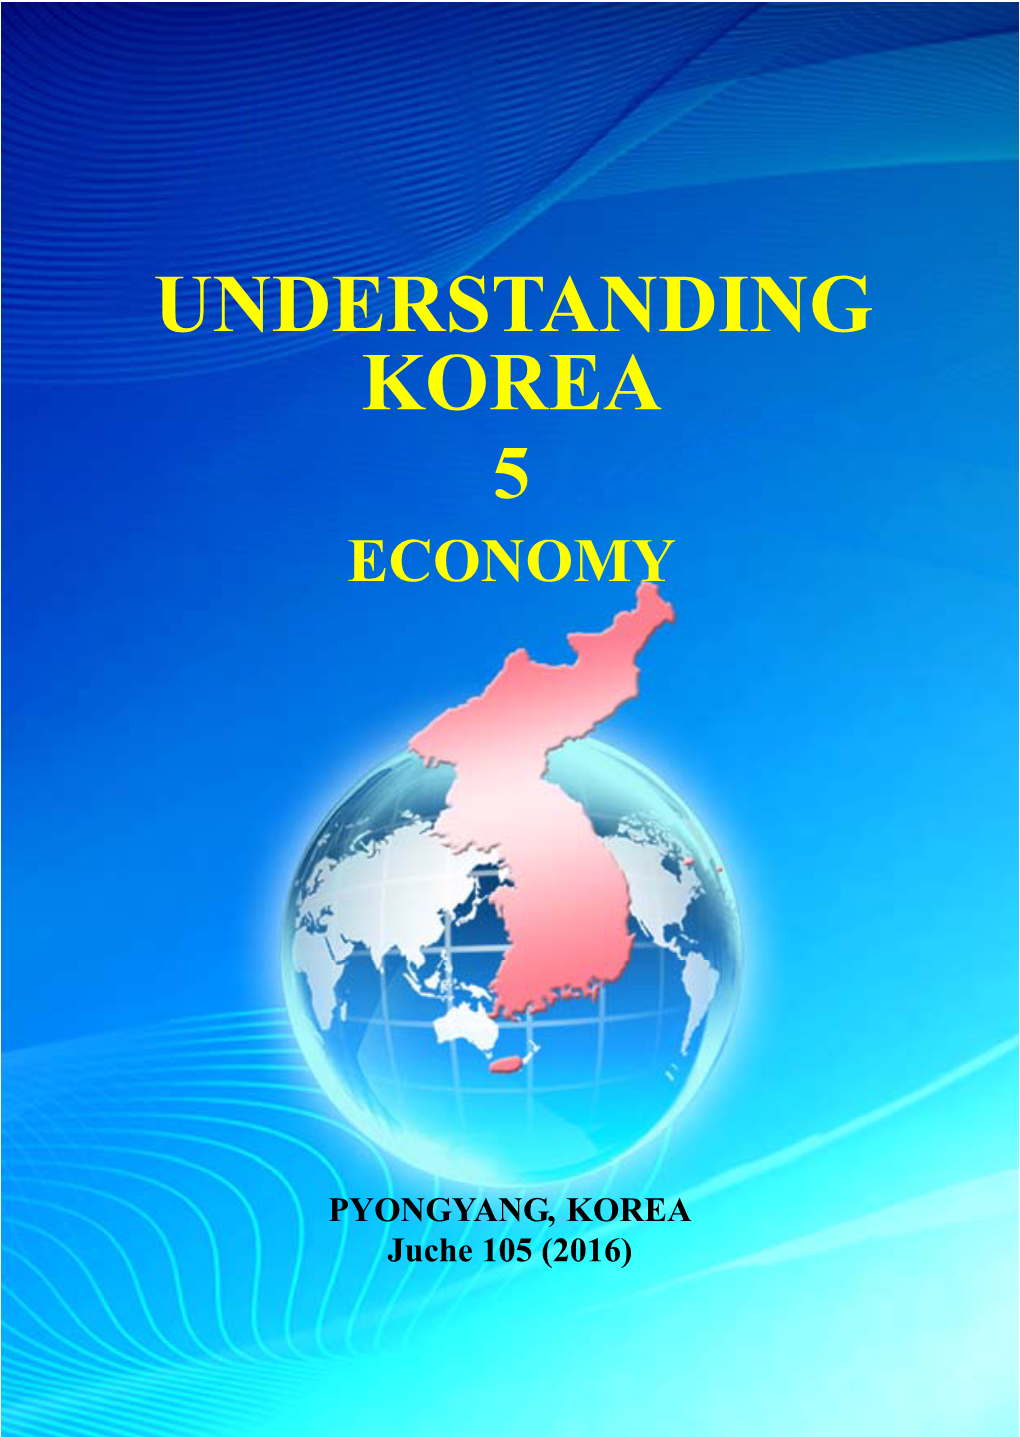 Understanding Korea 5 Economy